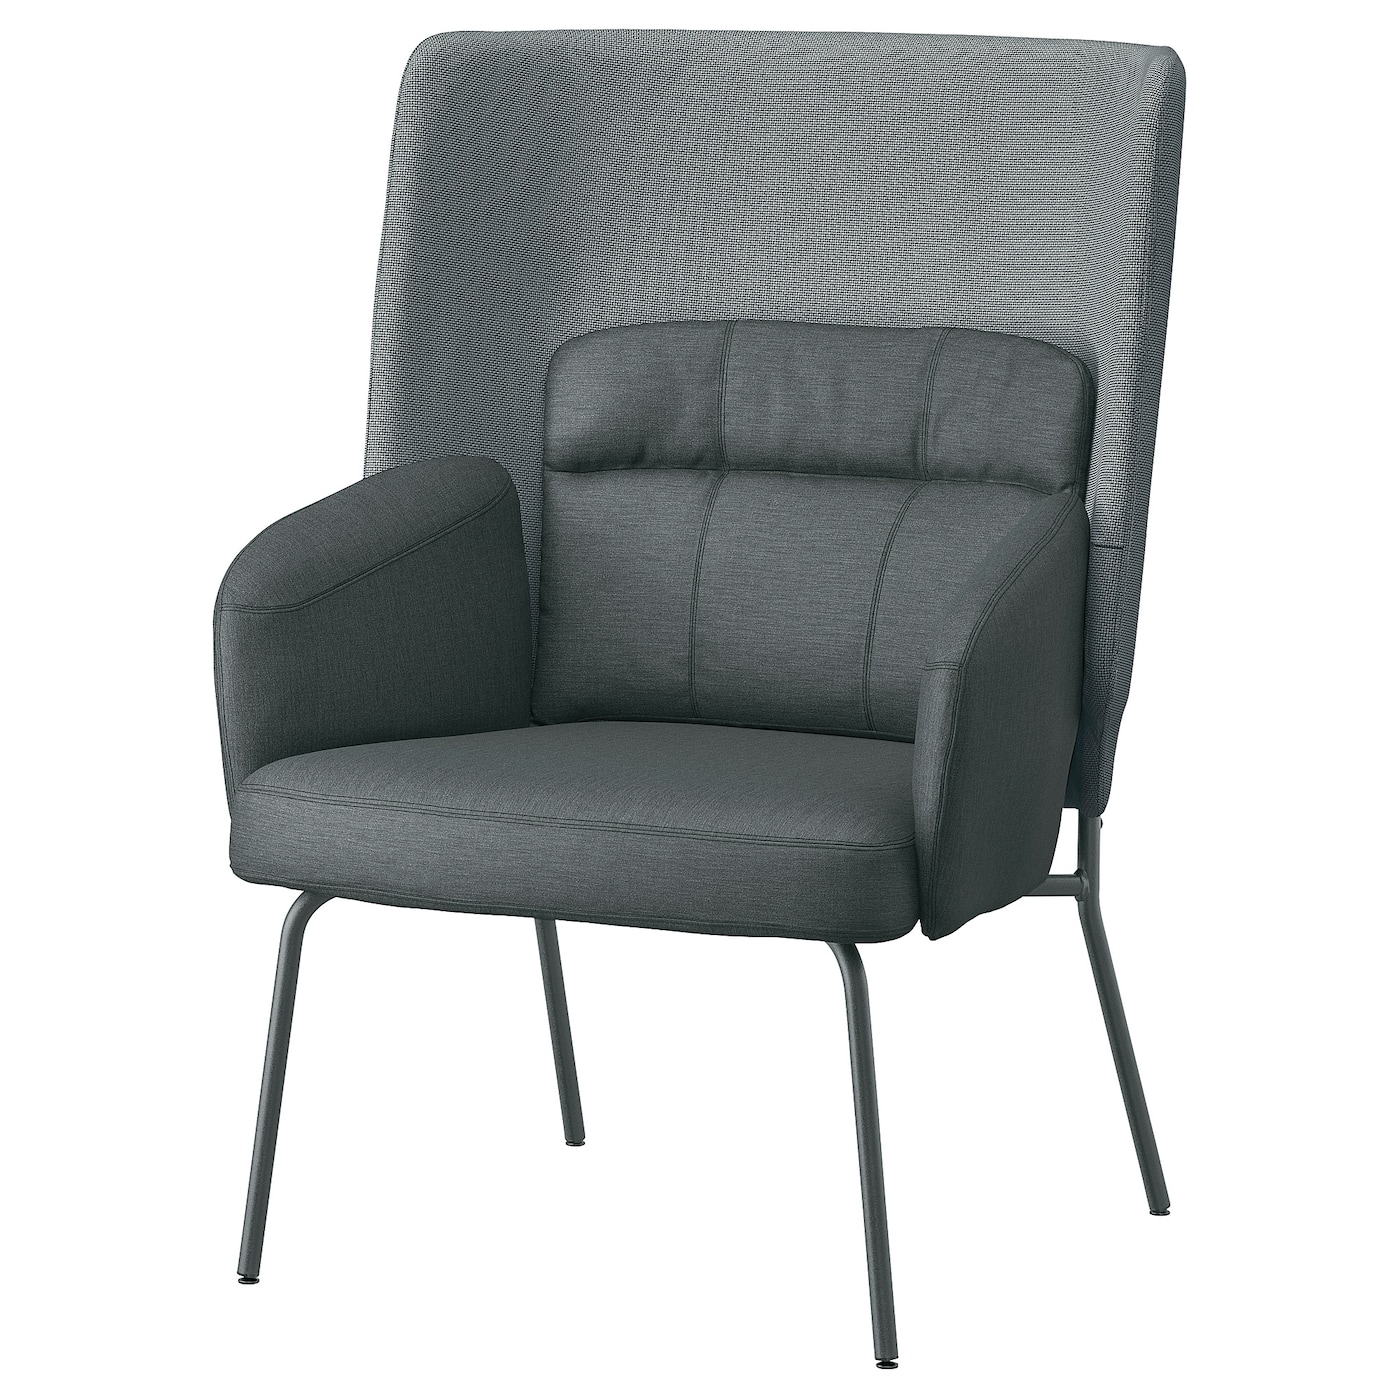 БИНГСТА Кресло с высокой спинкой, Виссле темно-серый/Кабуса темно-серый BINGSTA IKEA кресло вентал арт alfa черный темно серый